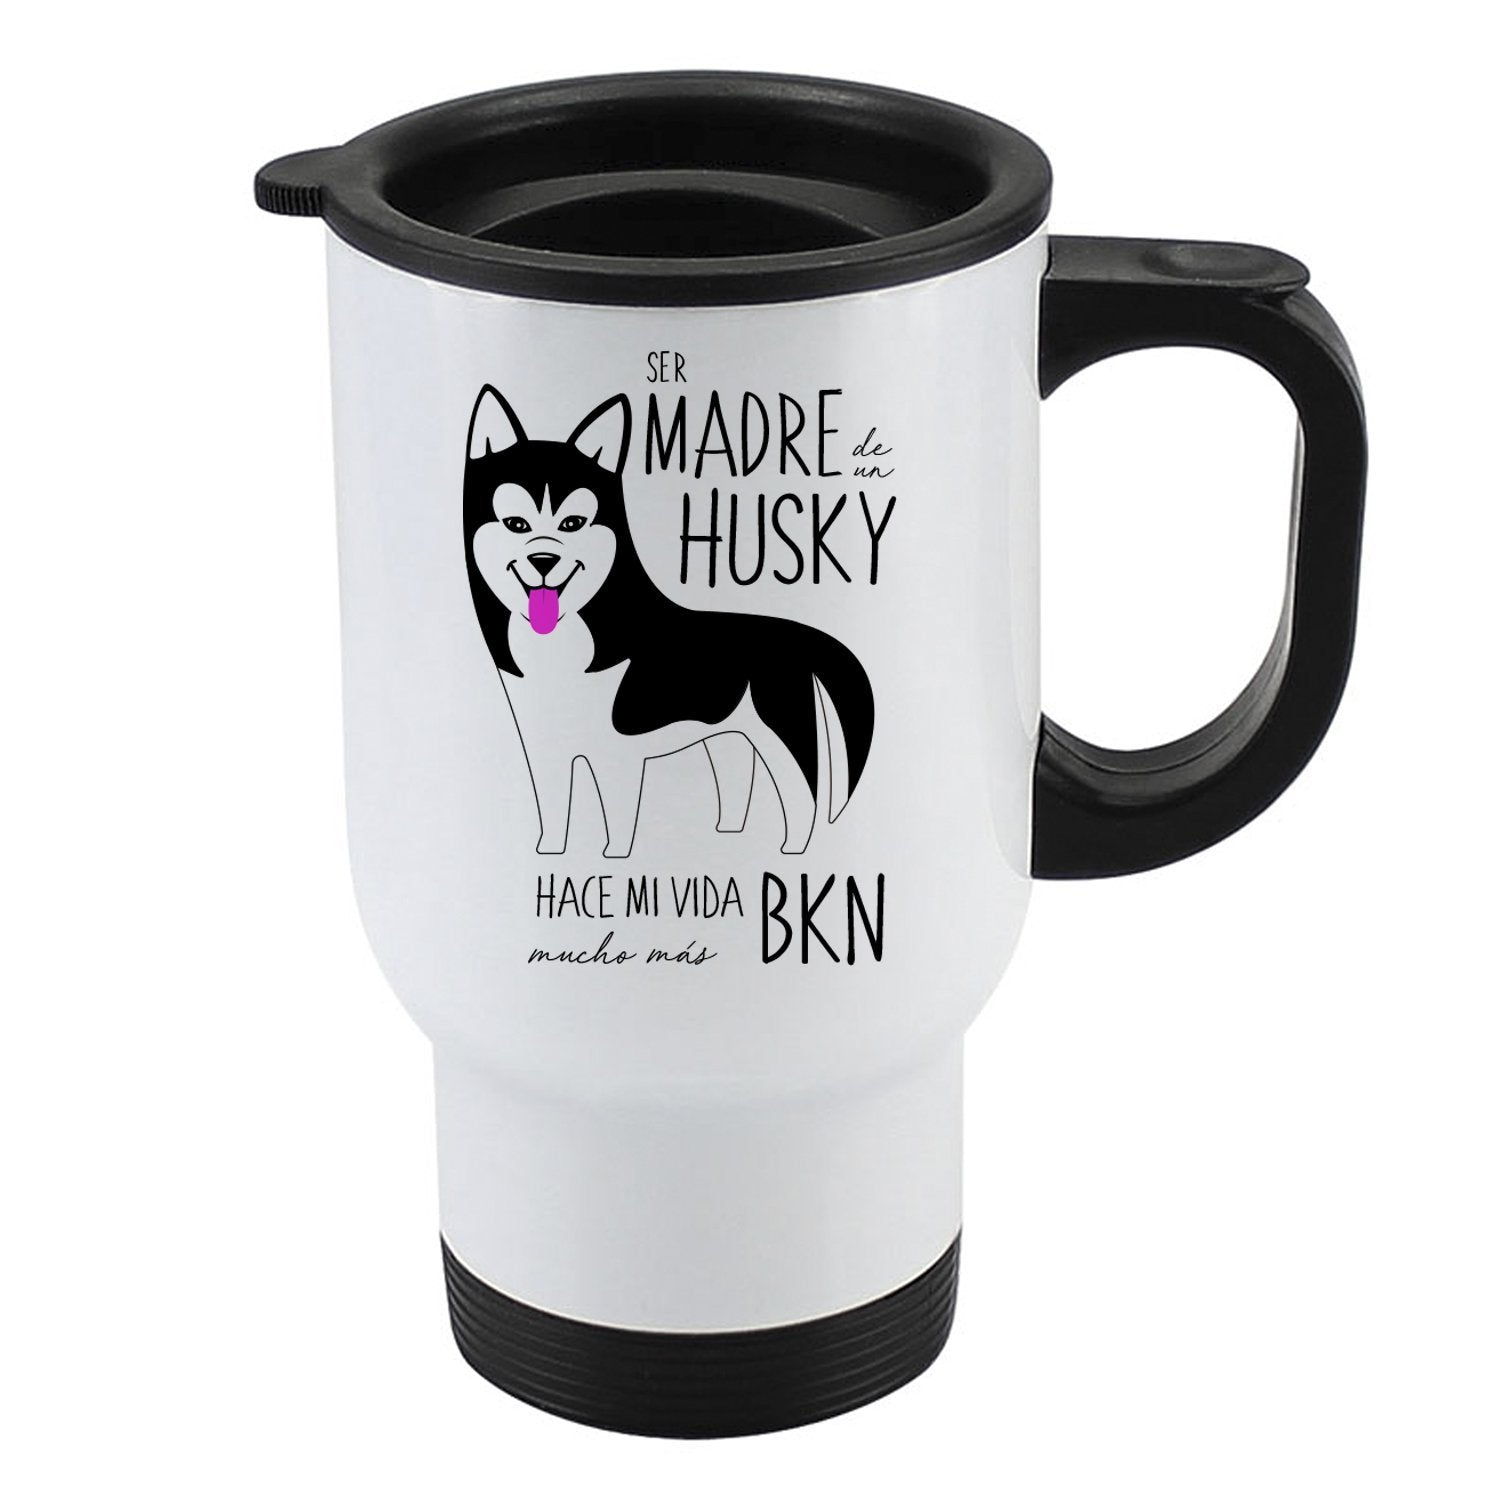 Mug 410cc - Husky Tienda Petfy Madre Black